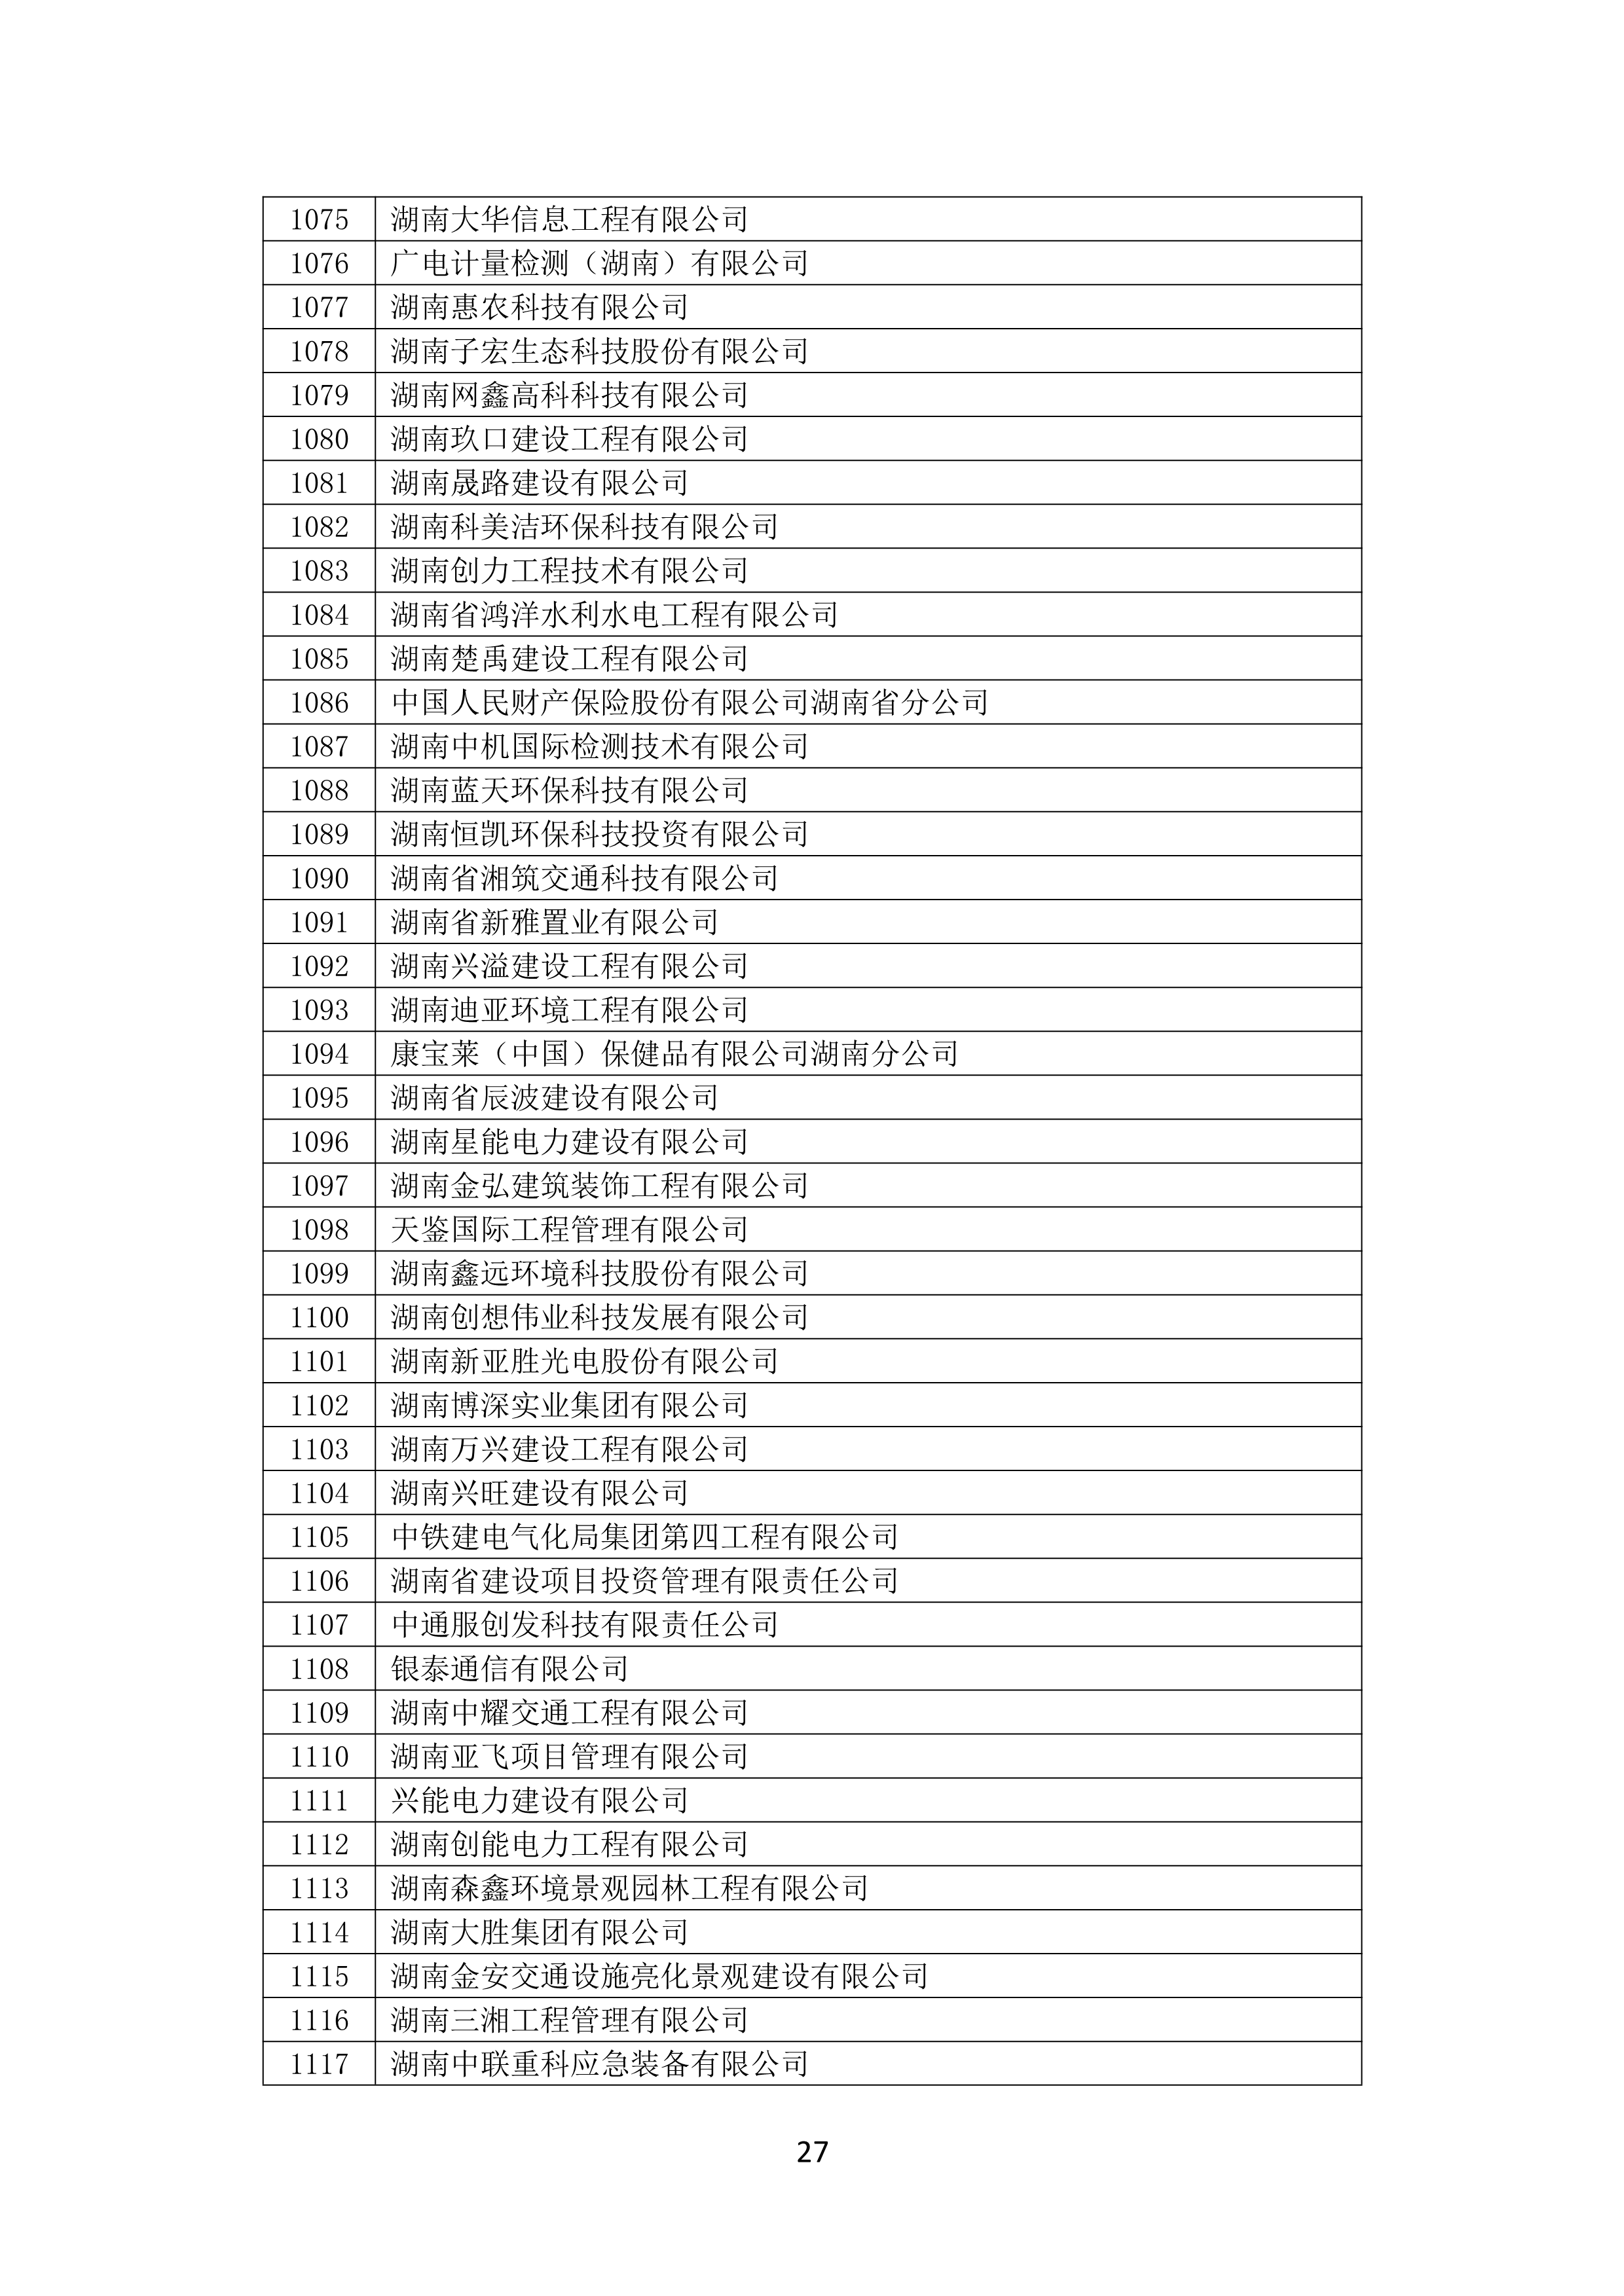 2021 年(nián)度湖南省守合同重信用企業名單_28.png